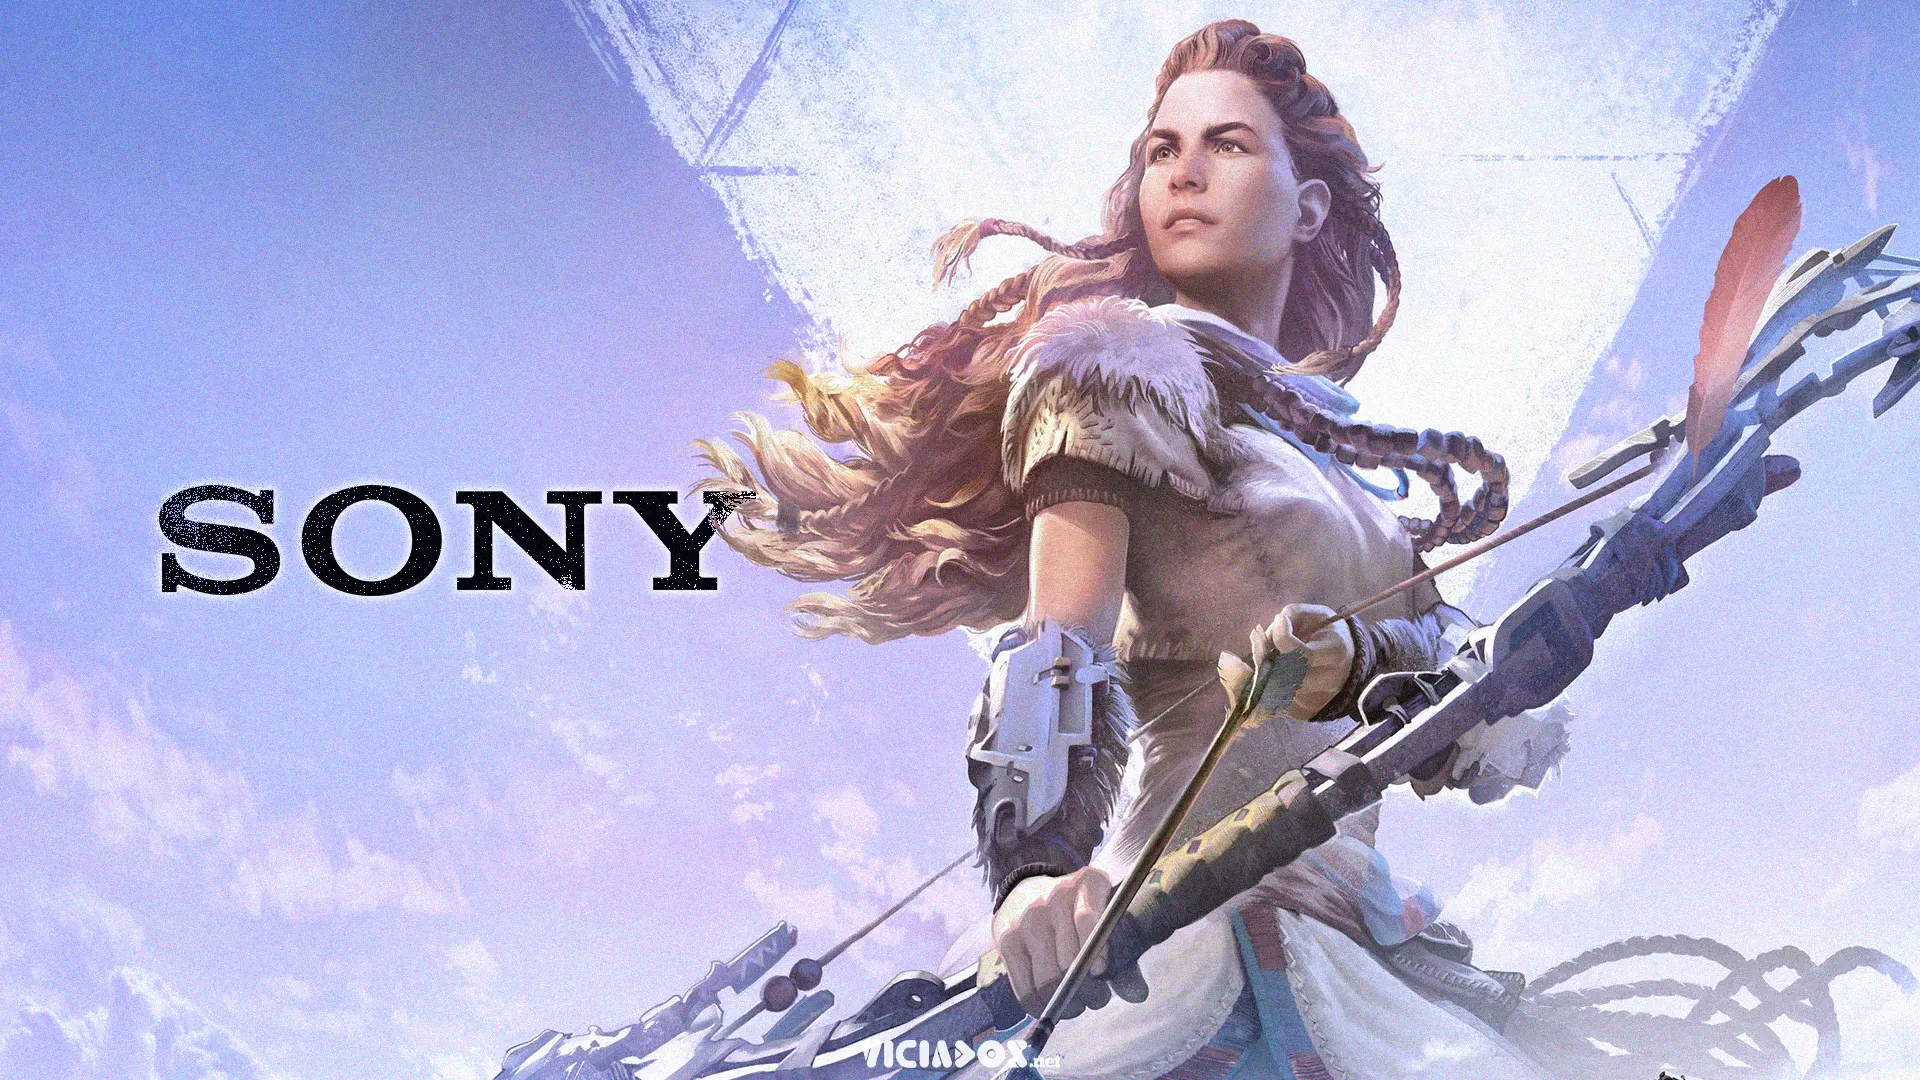 Sony estaria trabalhando em diversos projetos que ainda não foram anunciados 2022 Viciados